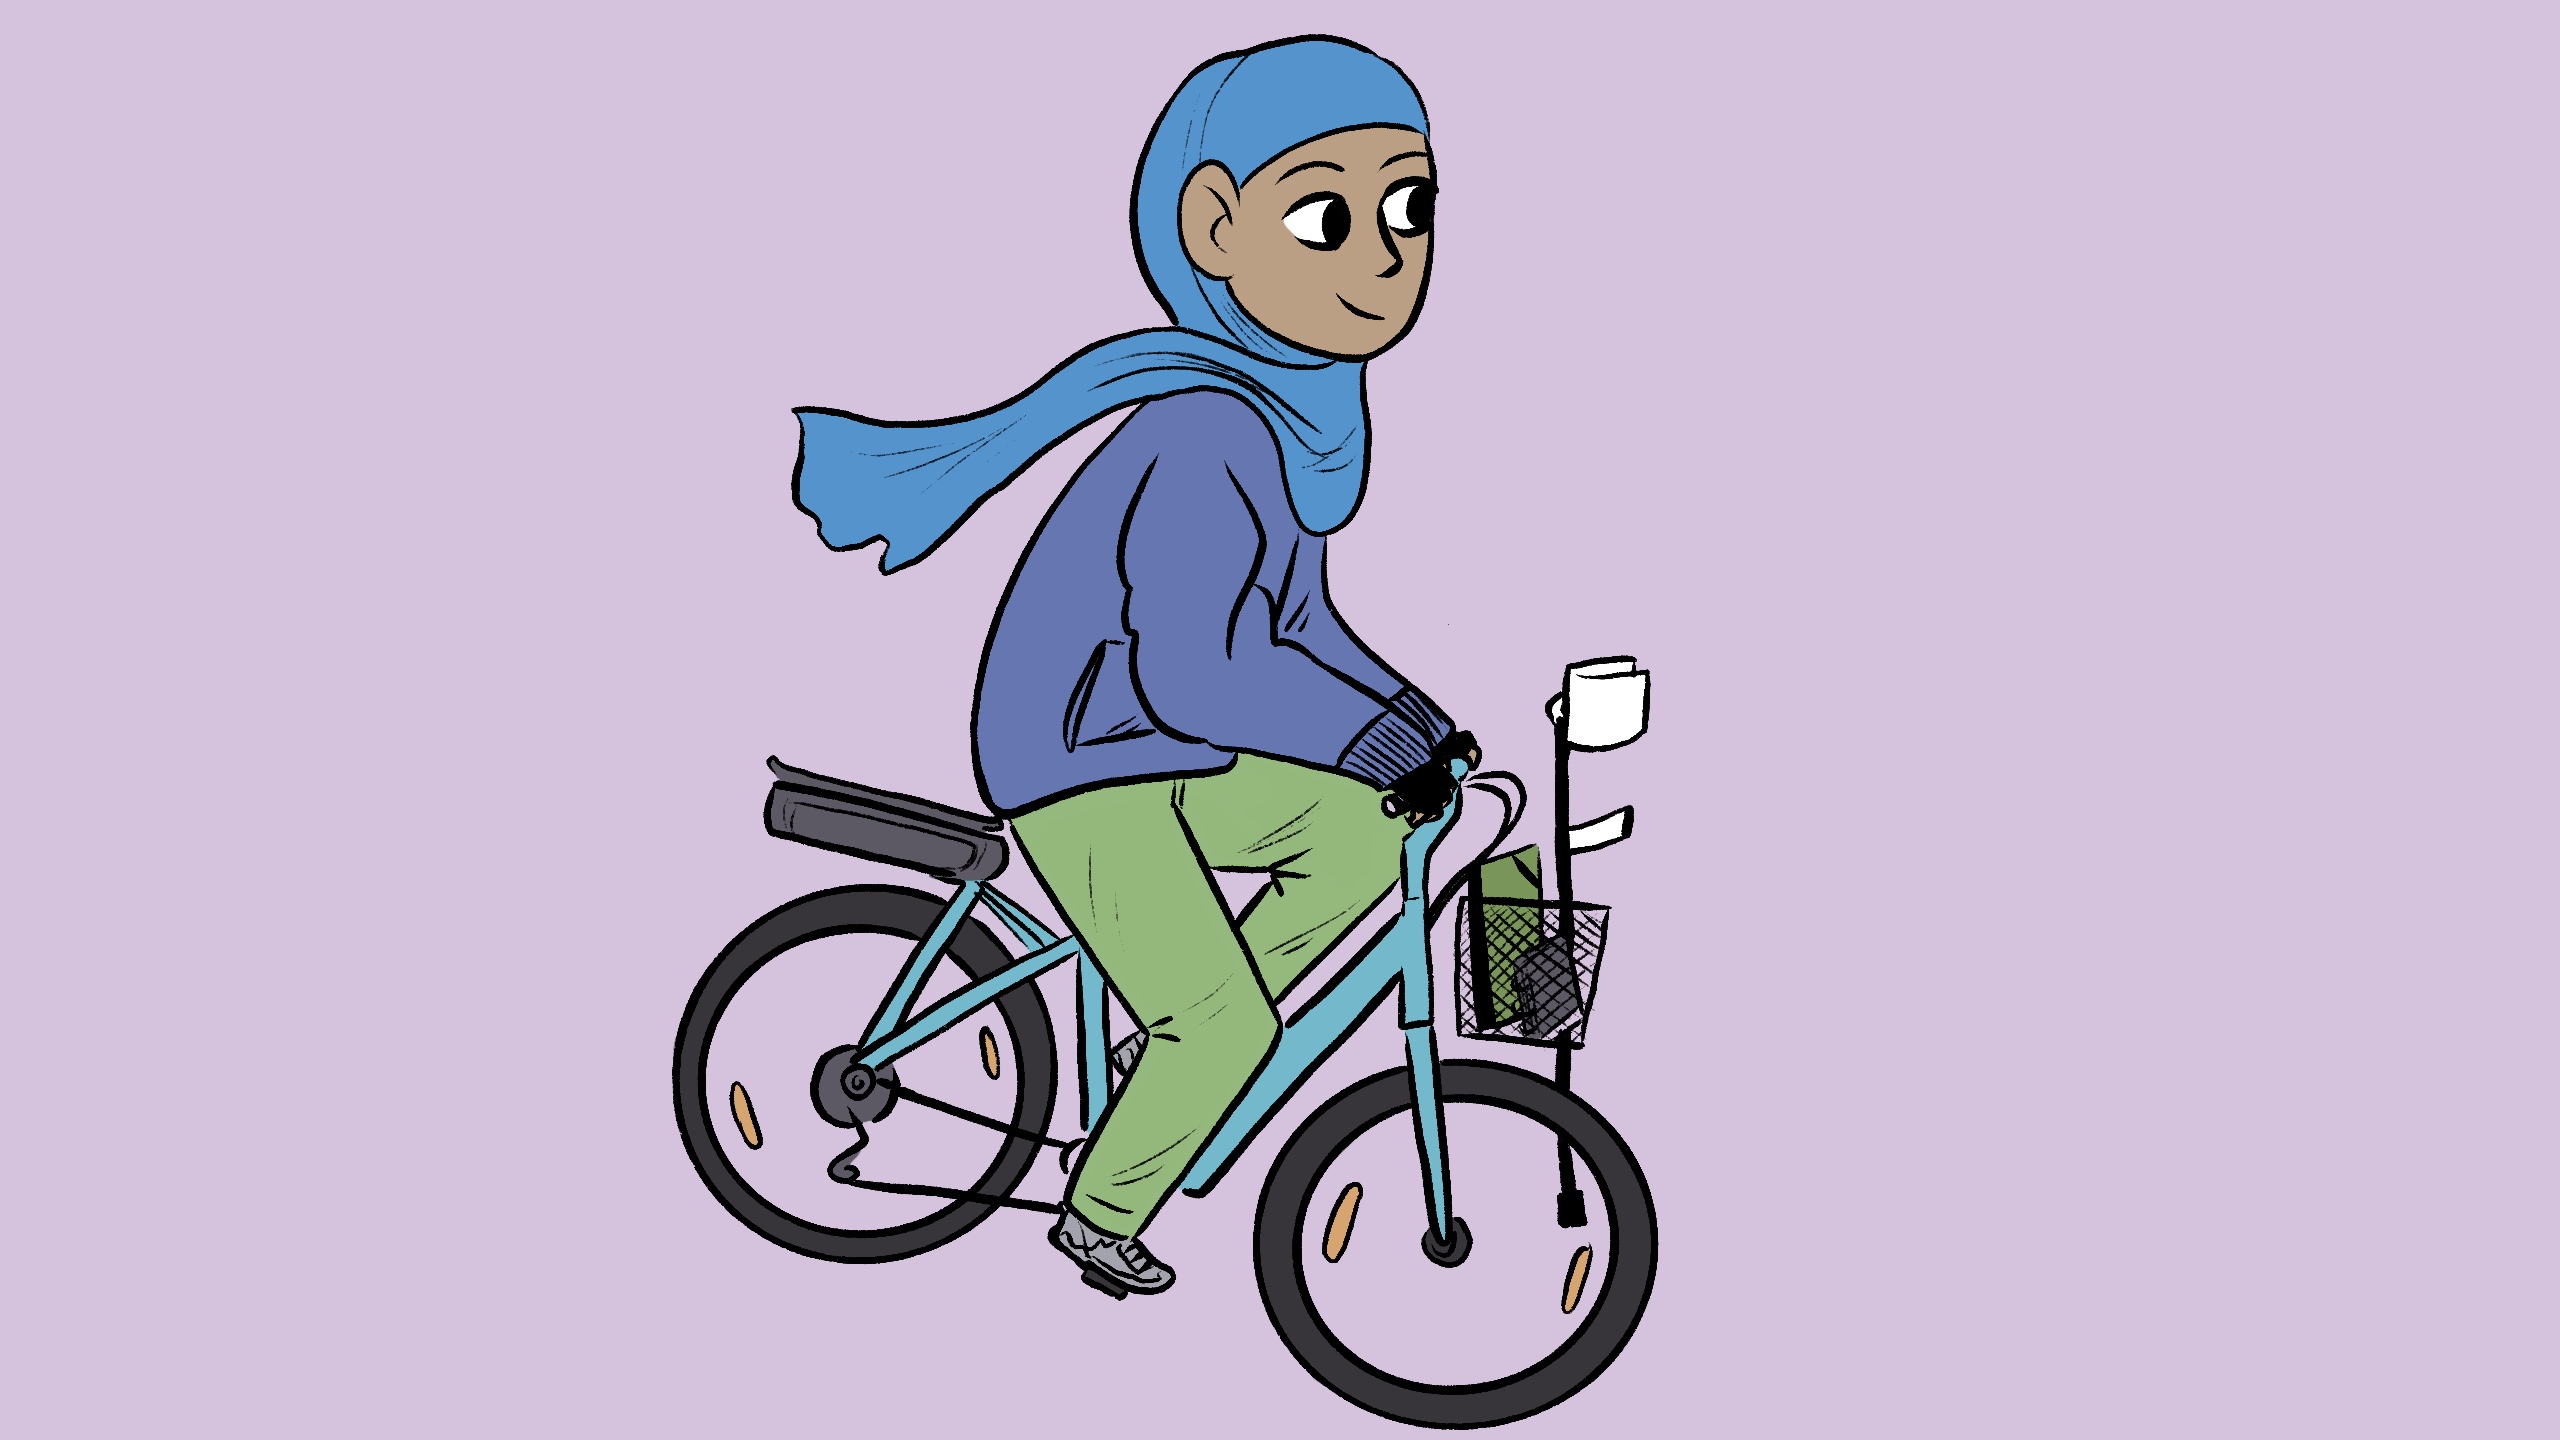 une personne à peau mate sur son vélo, portant un hijab bleu clair, une veste à poches violet clair, un pantalon vert clair ; le fond de l'image est mauve, le vélo est bleu avec un petit panier dans lequel se trouve une béquille blanche, une pochette et un carnet ; l'illustration est réalisée par Calvin Arium